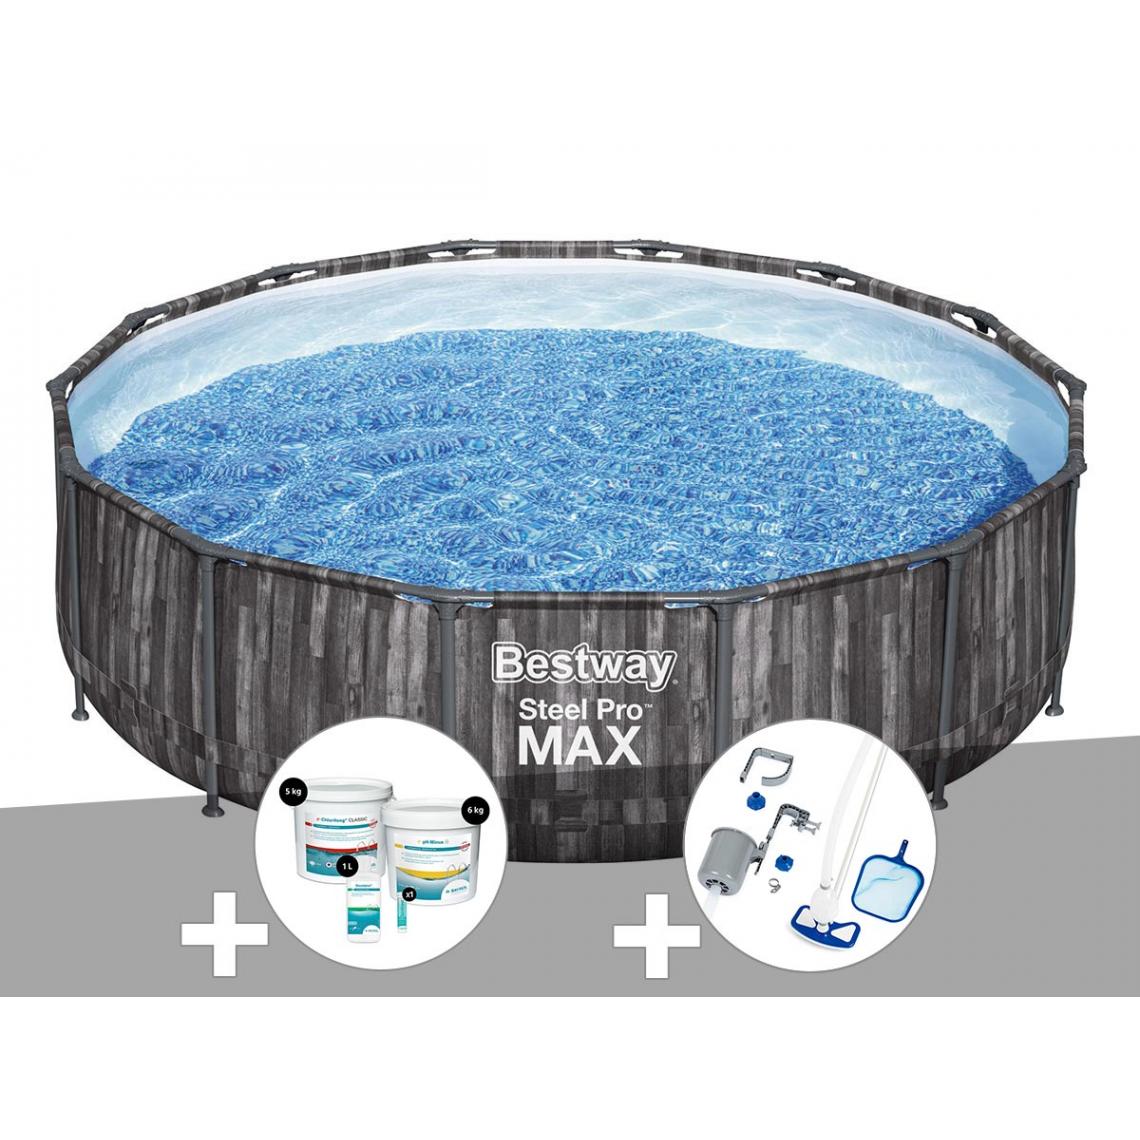 Bestway - Kit piscine tubulaire ronde Bestway Steel Pro Max décor bois, 4,27 x 1,07 m + Kit de traitement au chlore + Kit d'entretien Deluxe - Piscine Tubulaire